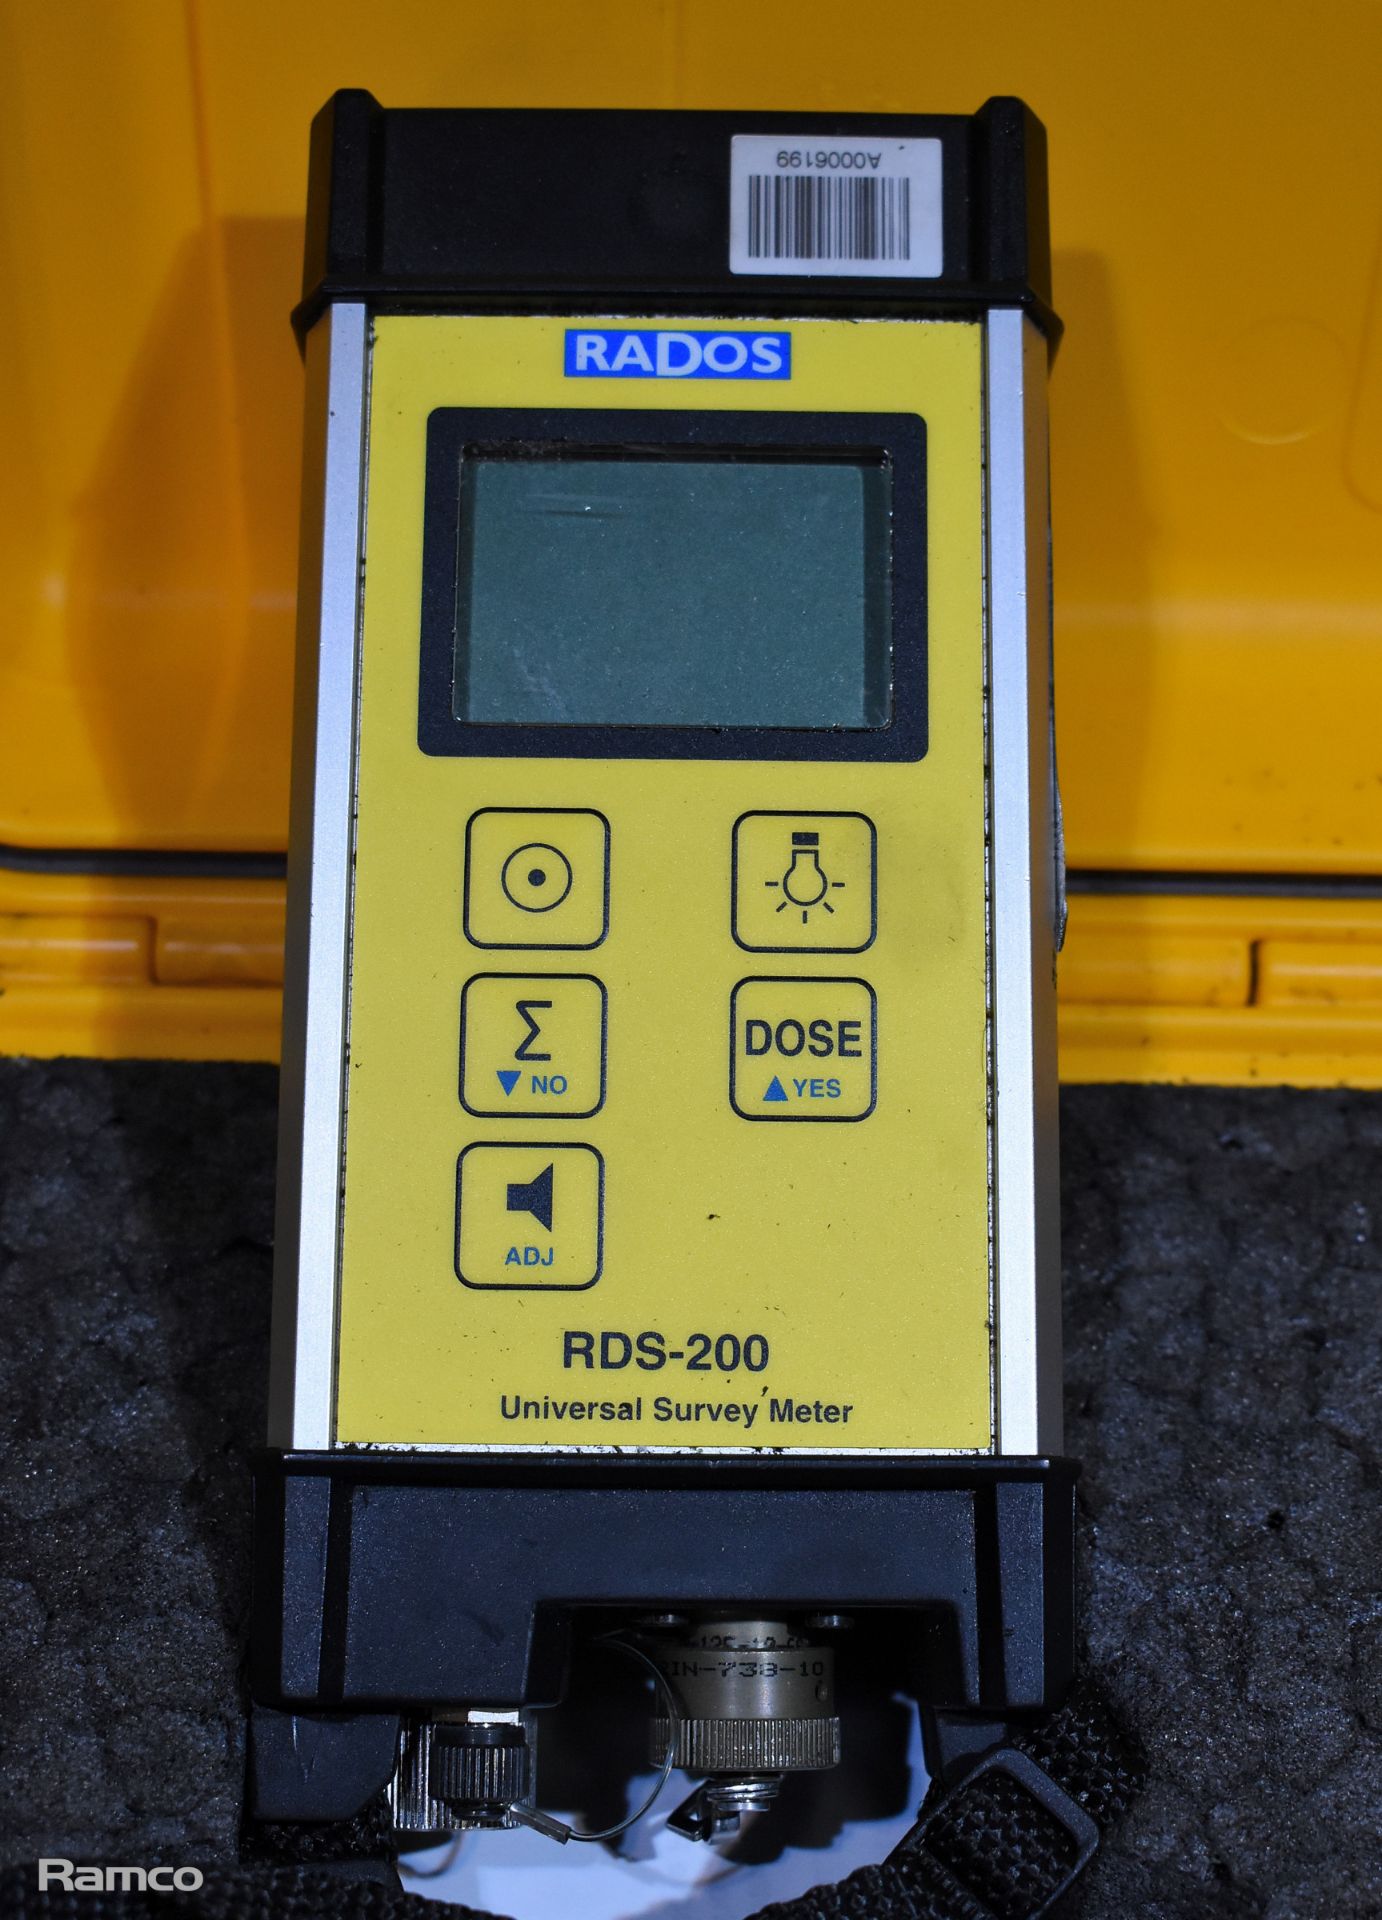 Rados RDS-200 universal survey meter, Rados GMP-11 sensor, 2x Siemens MK2.3 dosimeters - Image 3 of 10